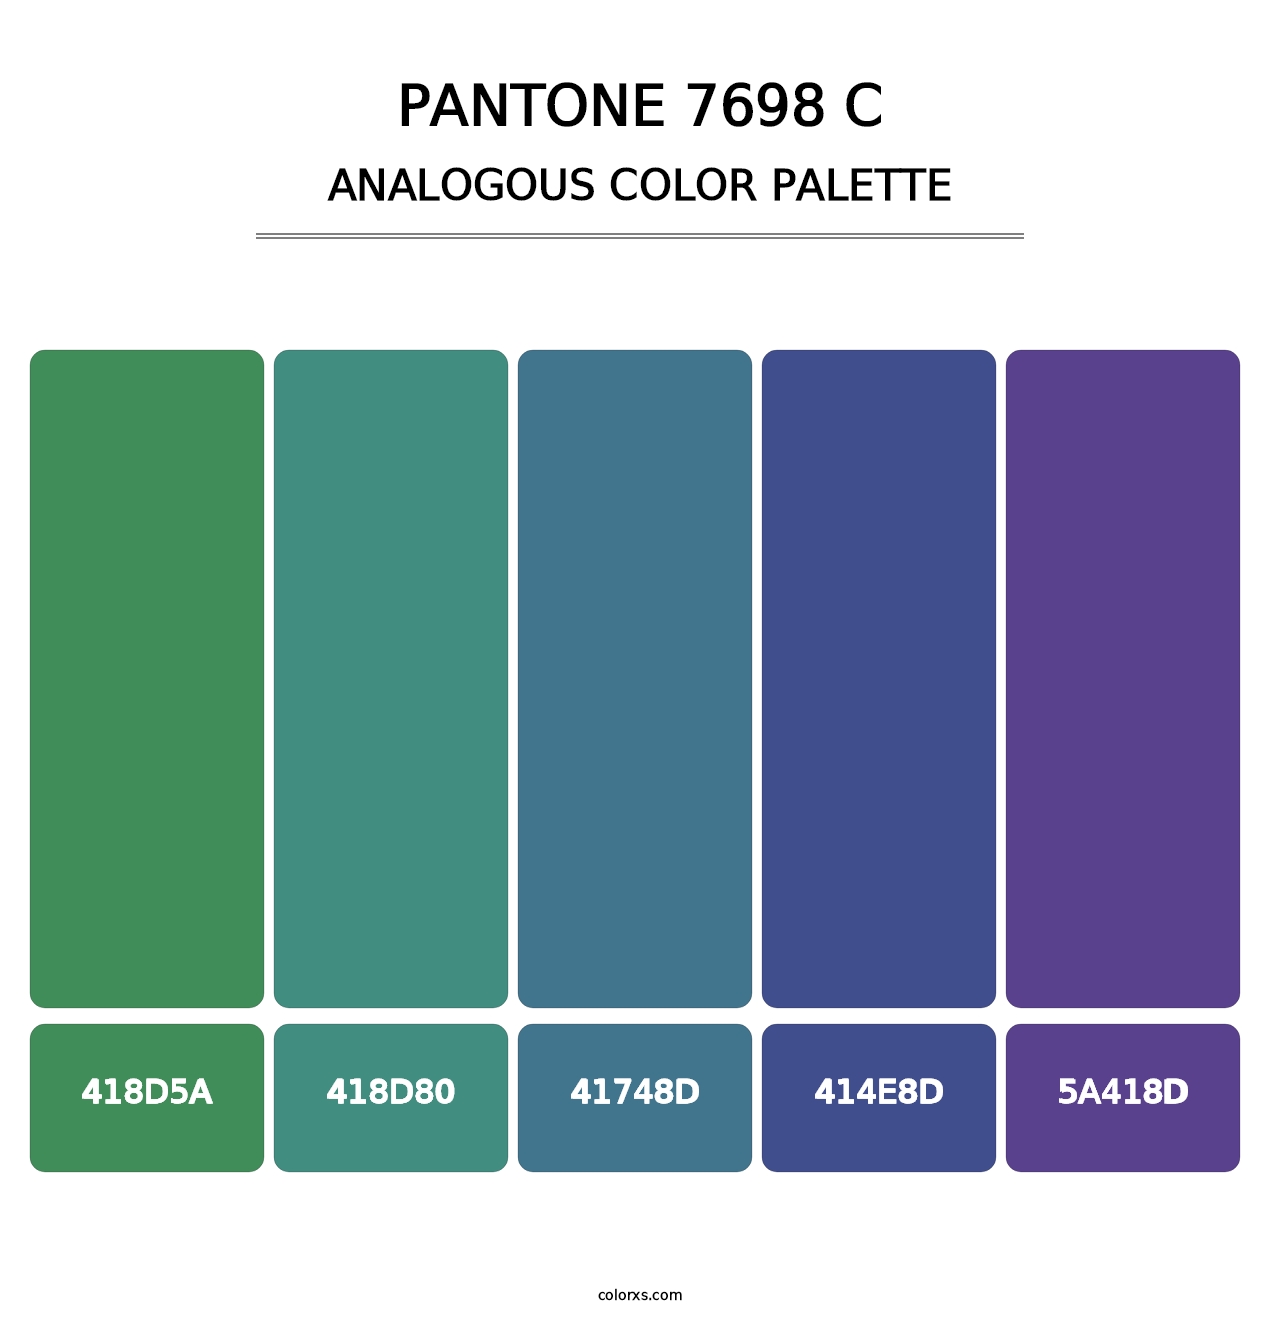 PANTONE 7698 C - Analogous Color Palette